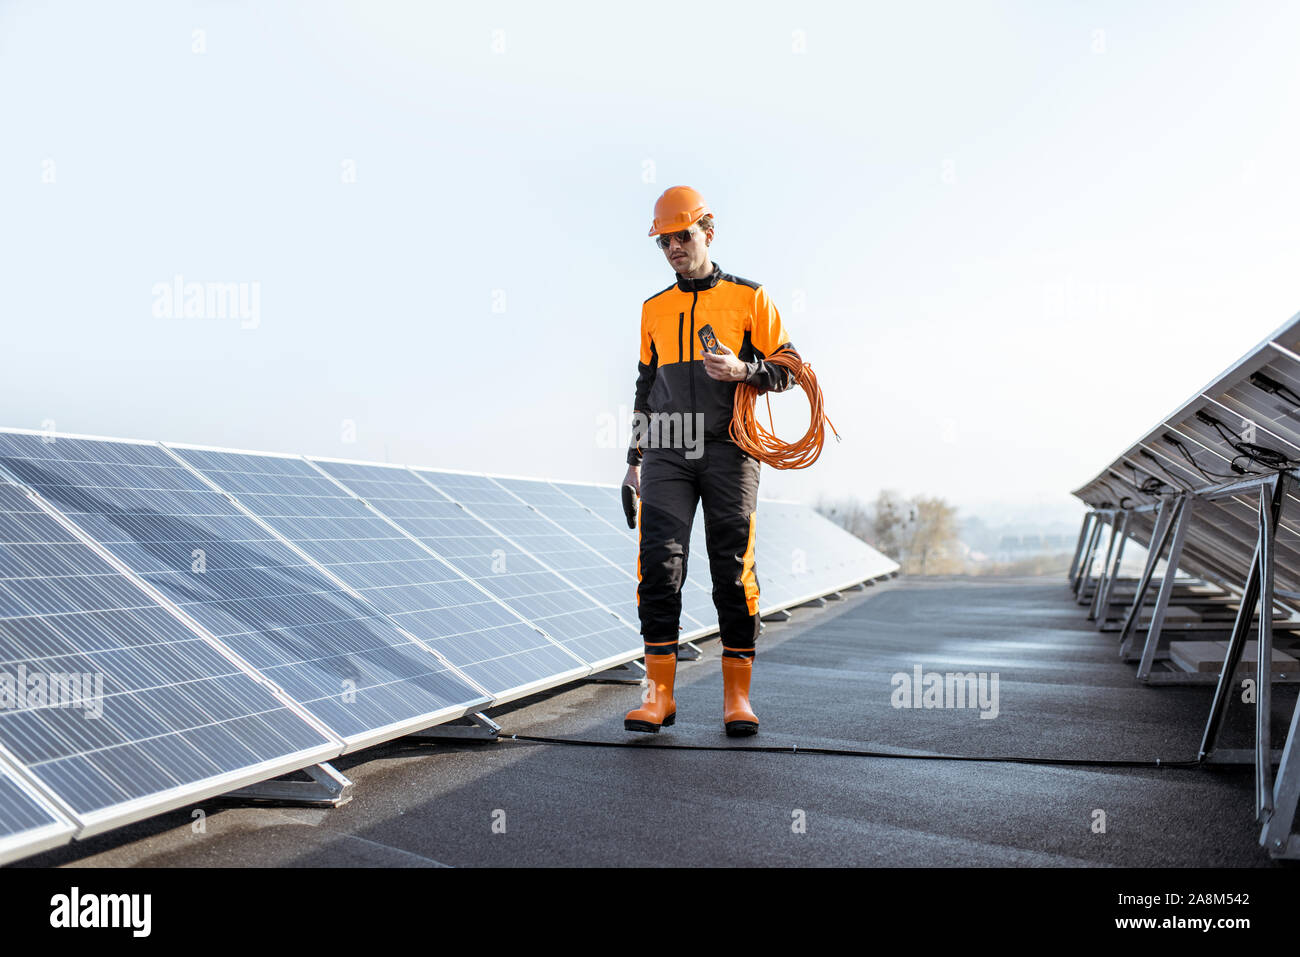 Ben attrezzato lavoratore in arancione di protezione abbigliamento passeggiate ed esaminando i pannelli solari su un tetto fotovoltaico impianto. Concetto di manutenzione e installazione di stazioni solari Foto Stock